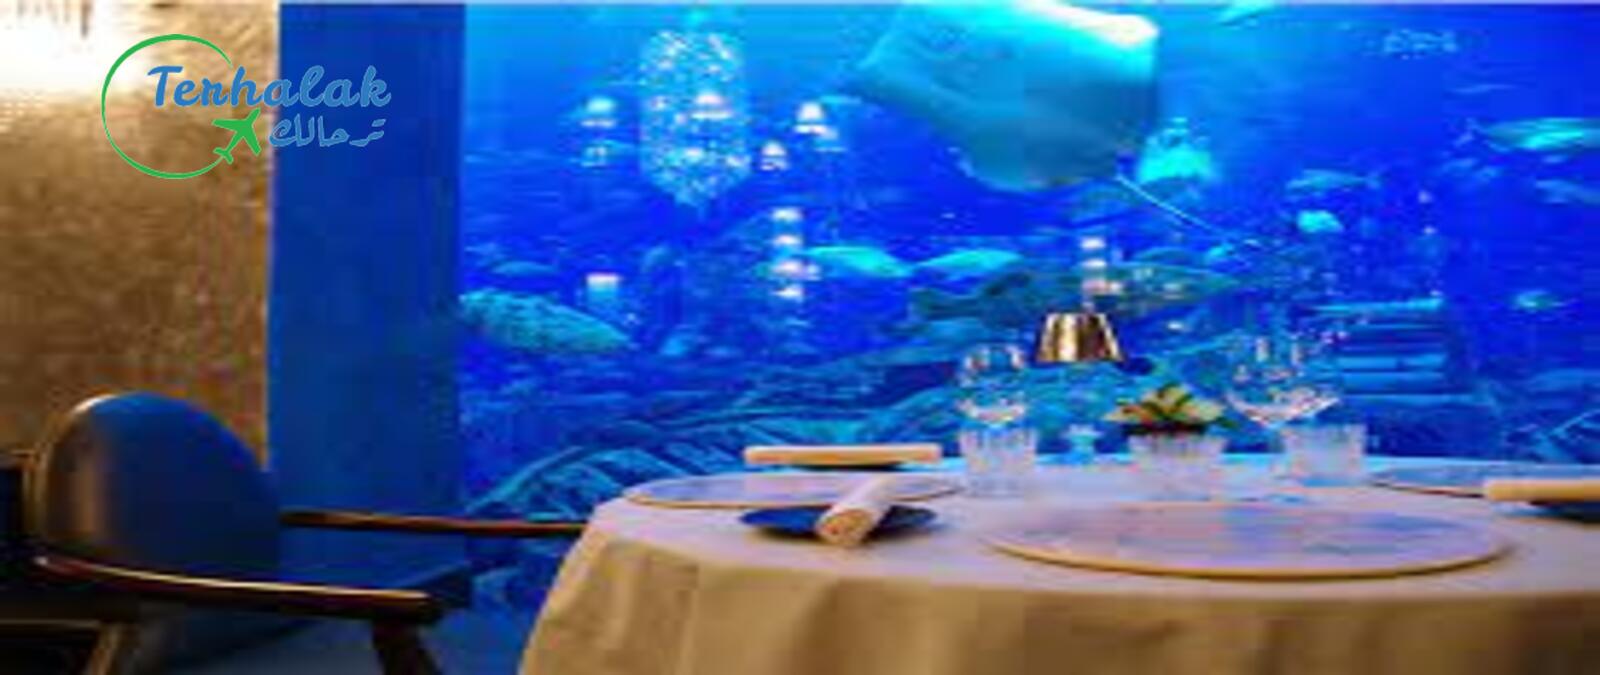 افضل مطعم تحت الماء في دبي